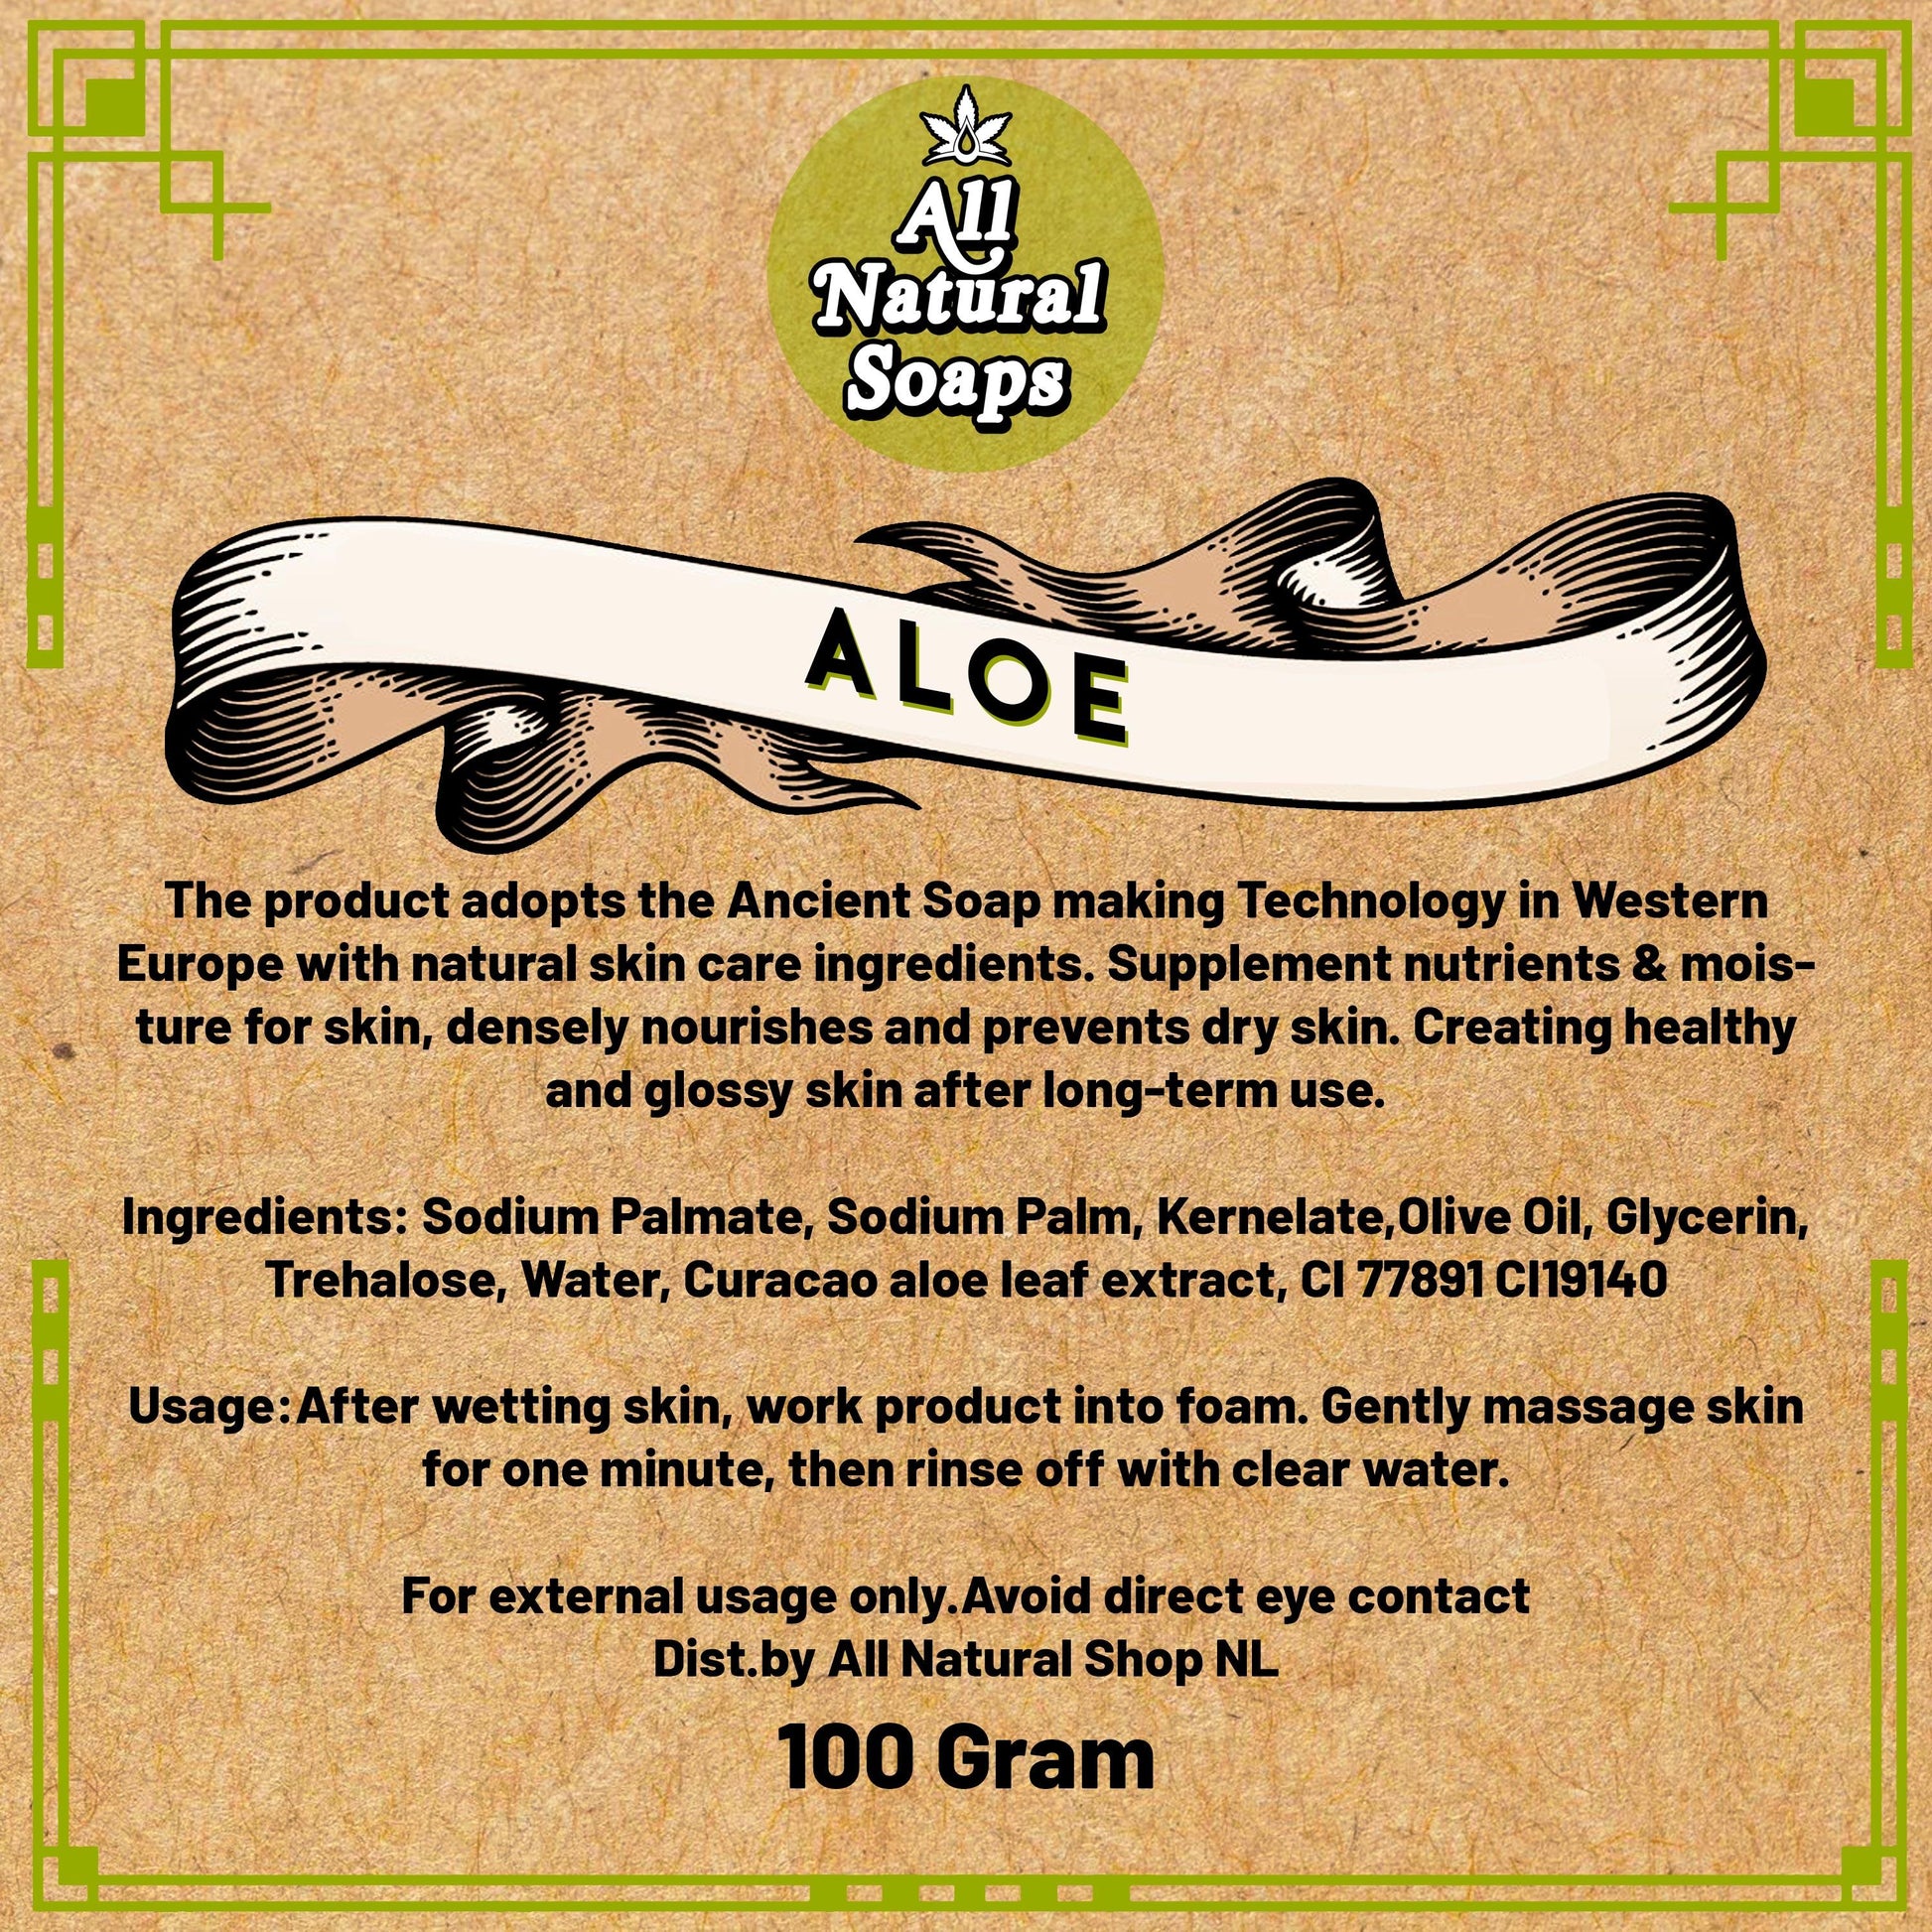 Natural Soap - Aloe - All Natural Soaps